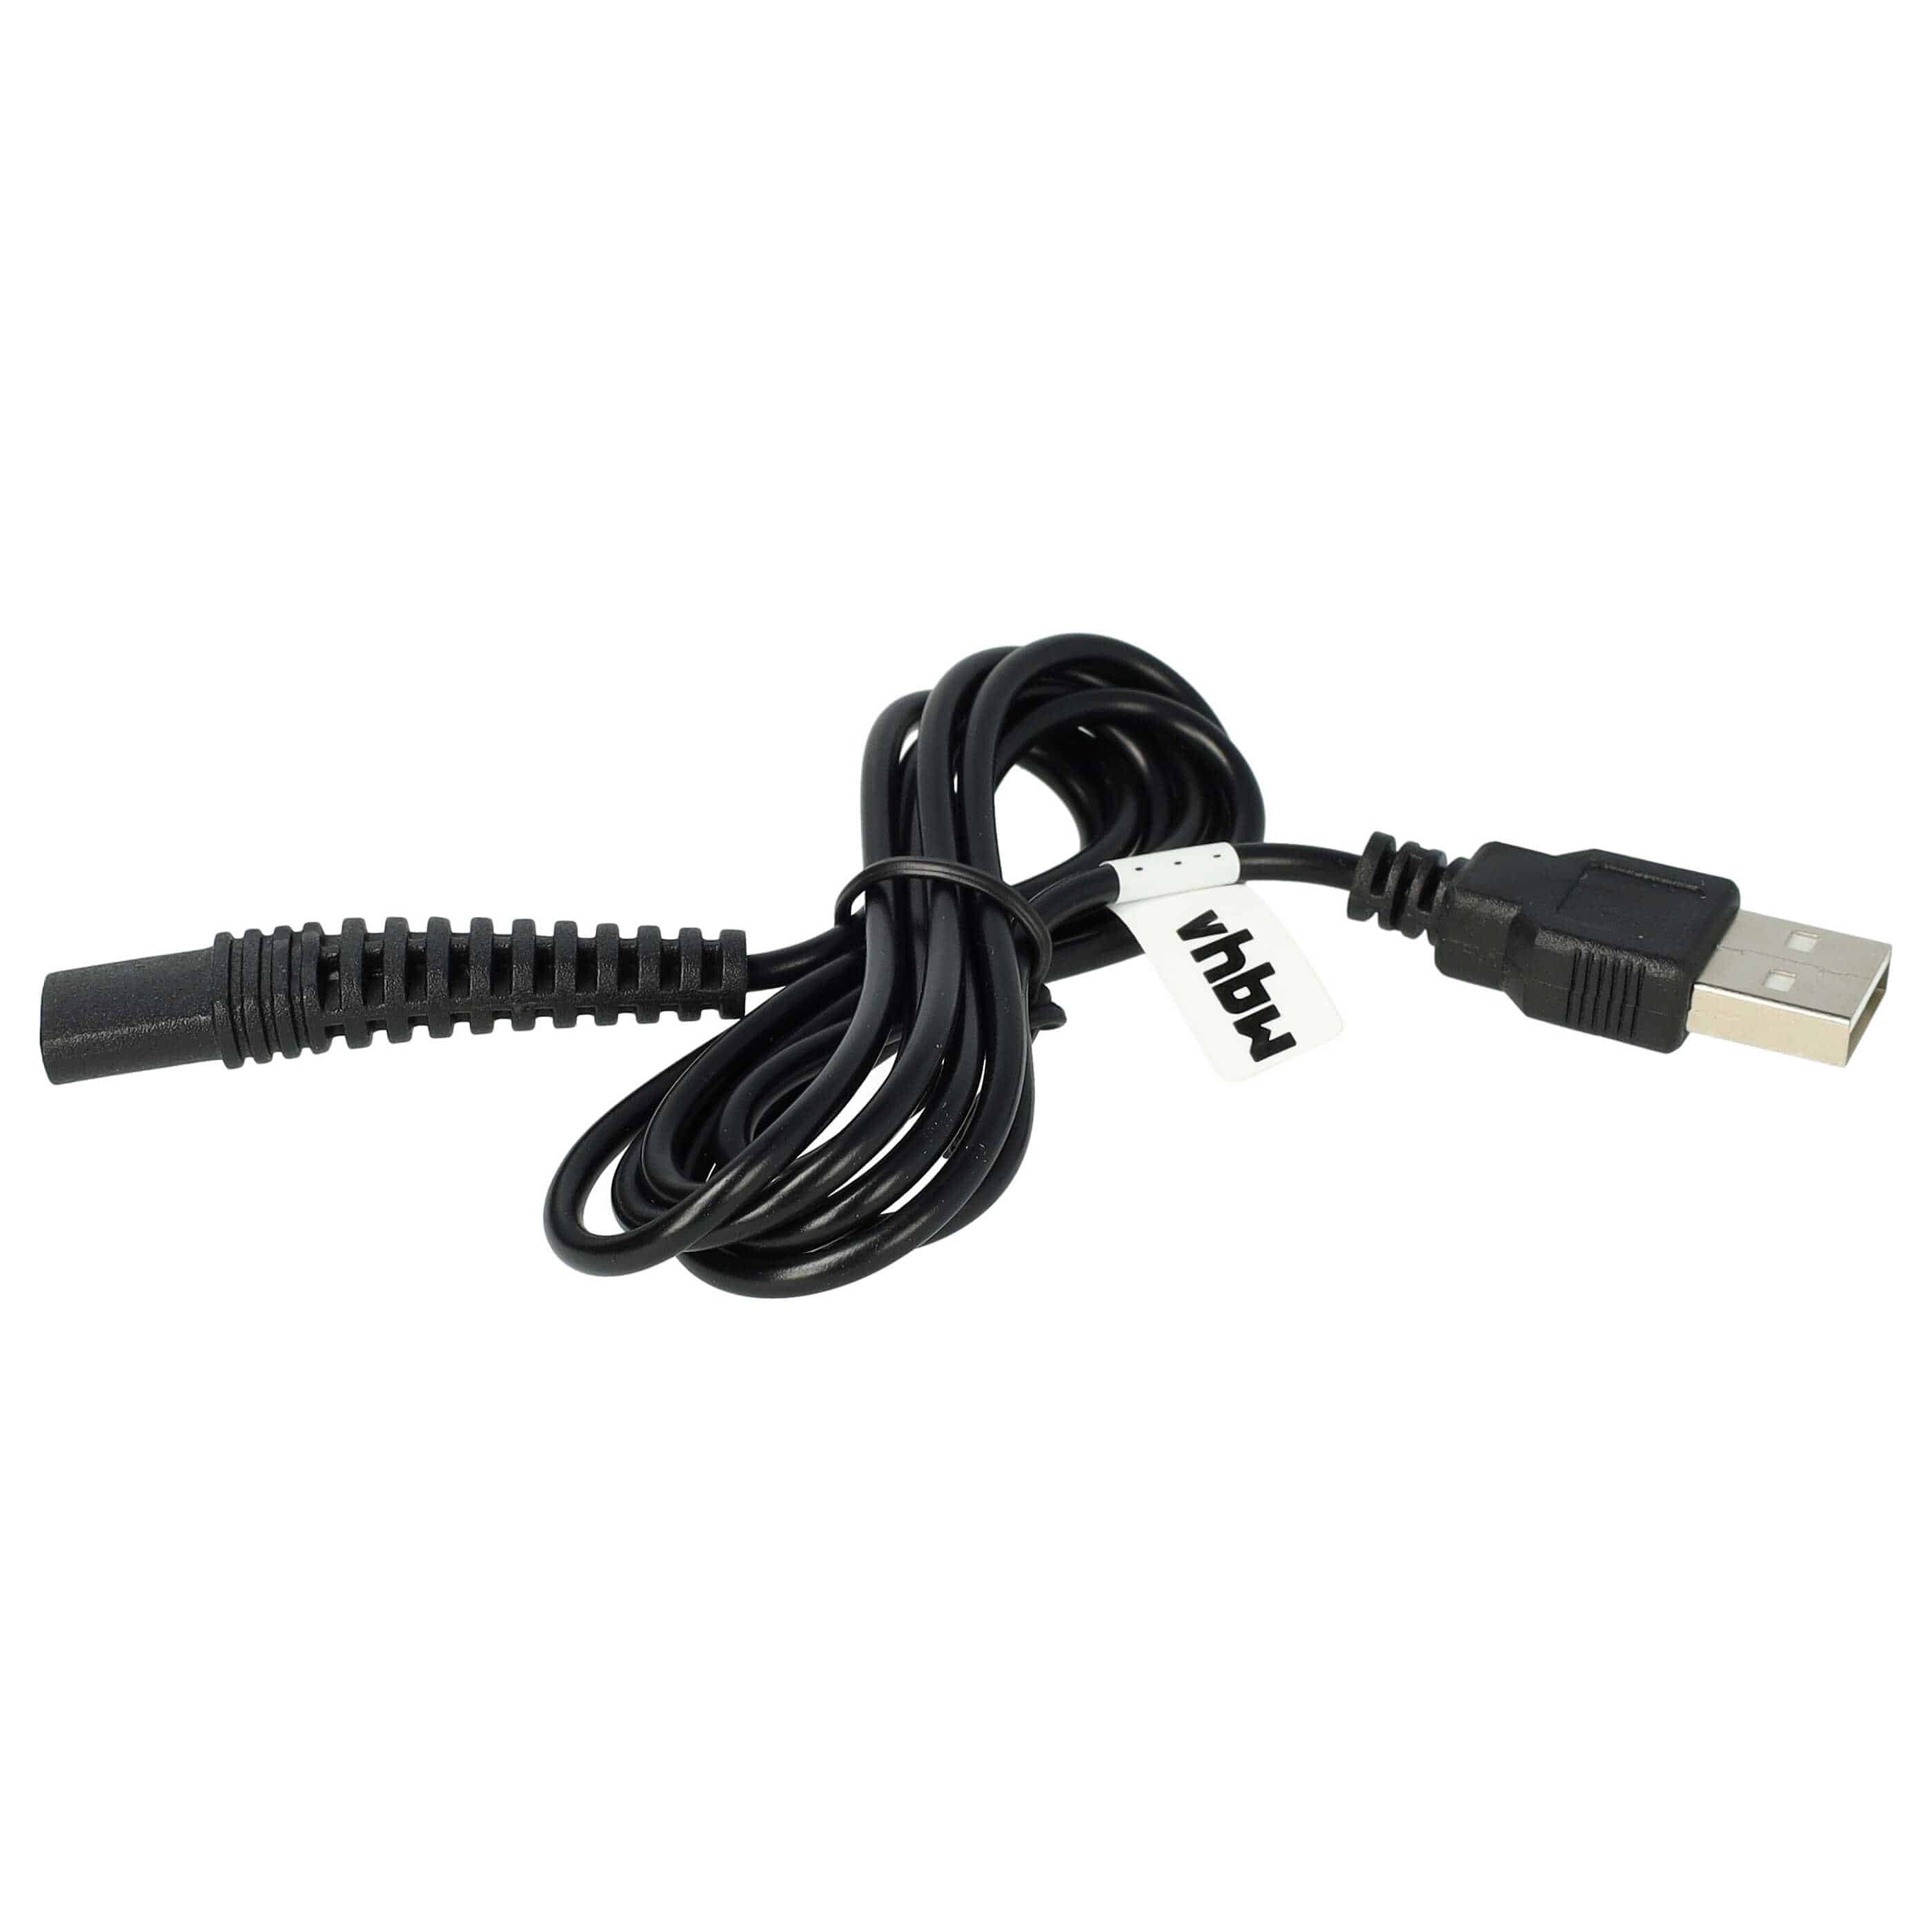 USB Ladekabel passend für Braun, Oral-B HC20 (5611) Rasierer, Zahnbürste u.a. - 120 cm